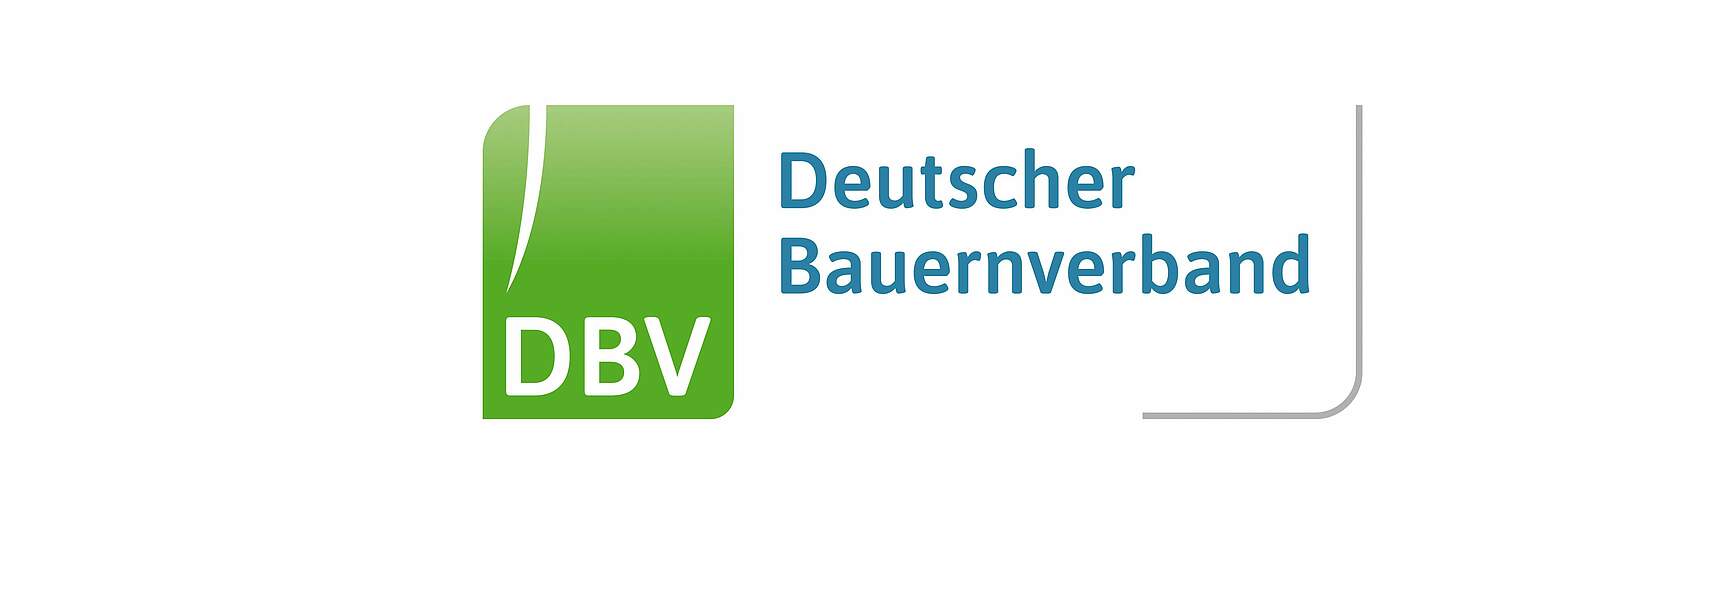 Wahlvorschlag des DBV-Präsidiums für neuen DBV-Vorstand